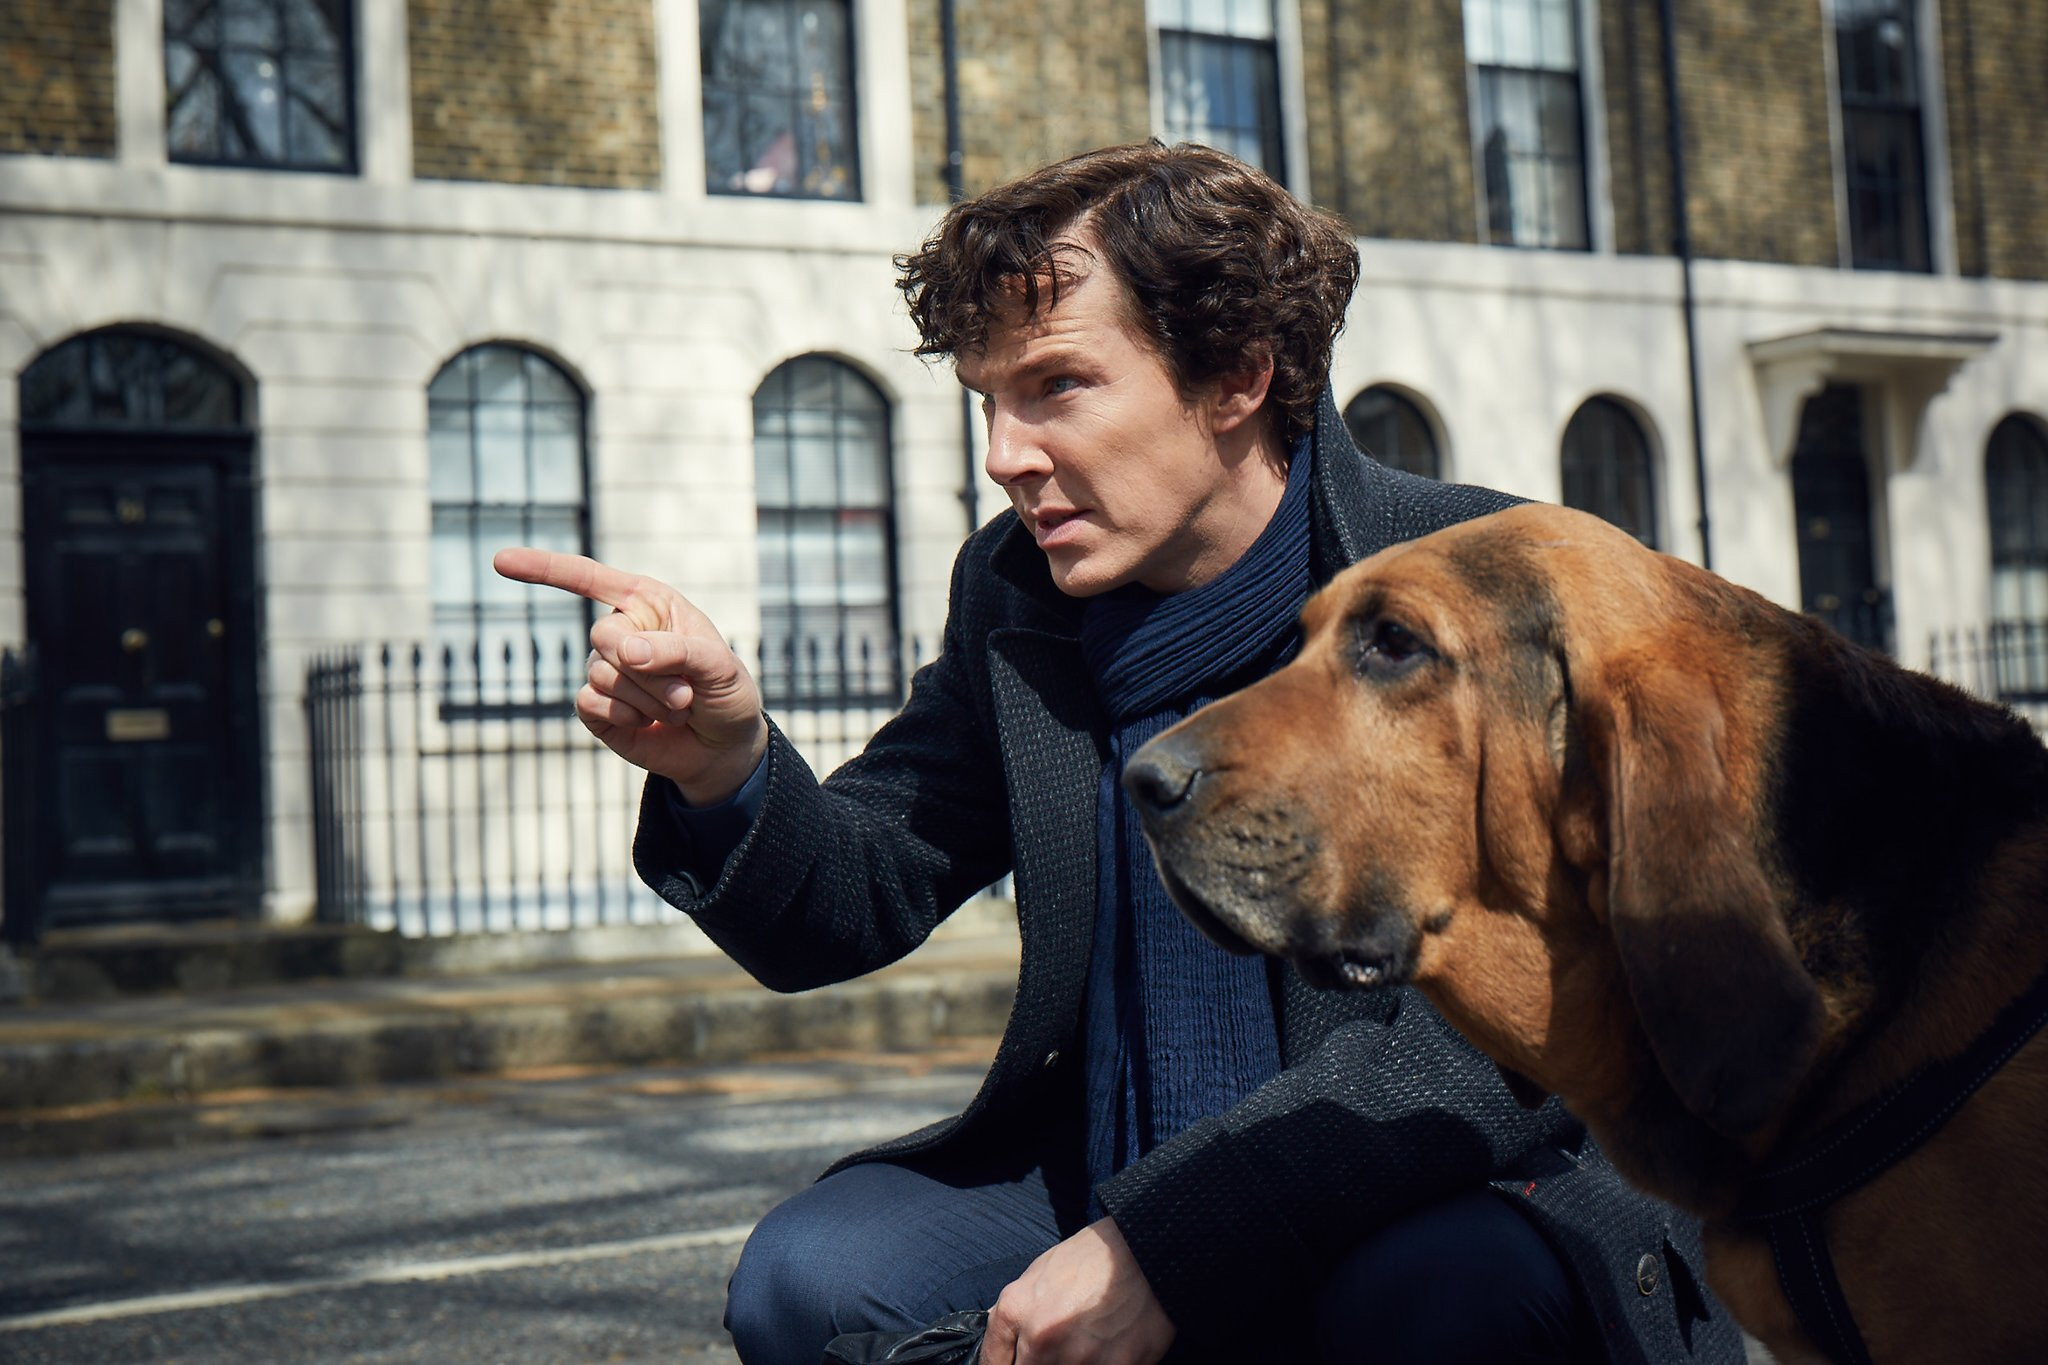   Sherlock S04  Image - BBC 